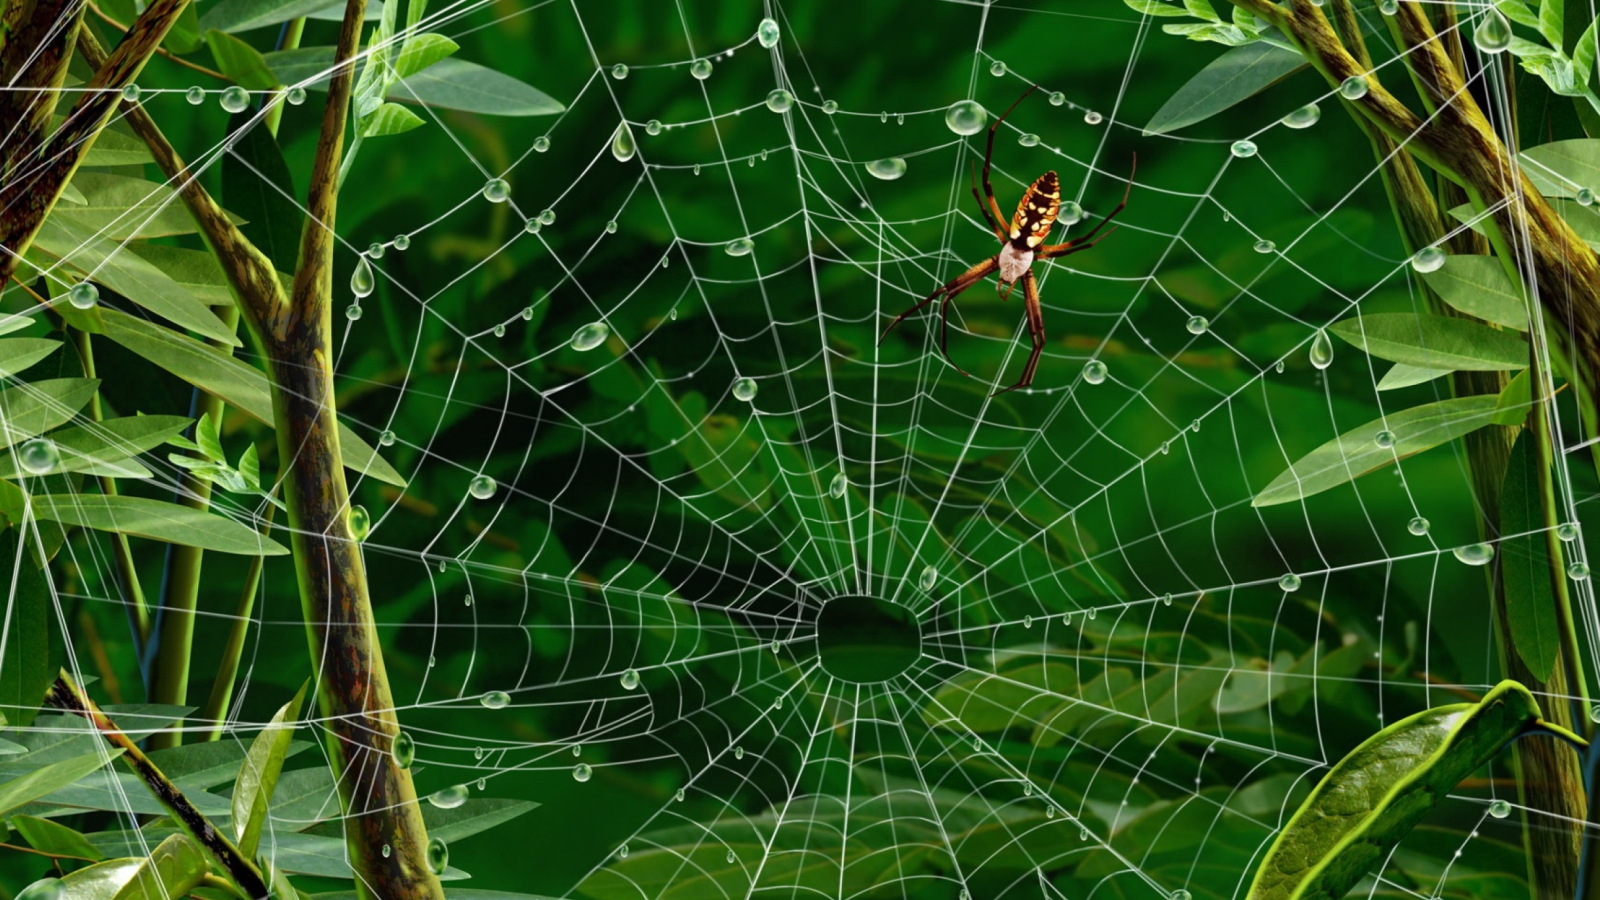 Spider On Net wallpaper 1600x900